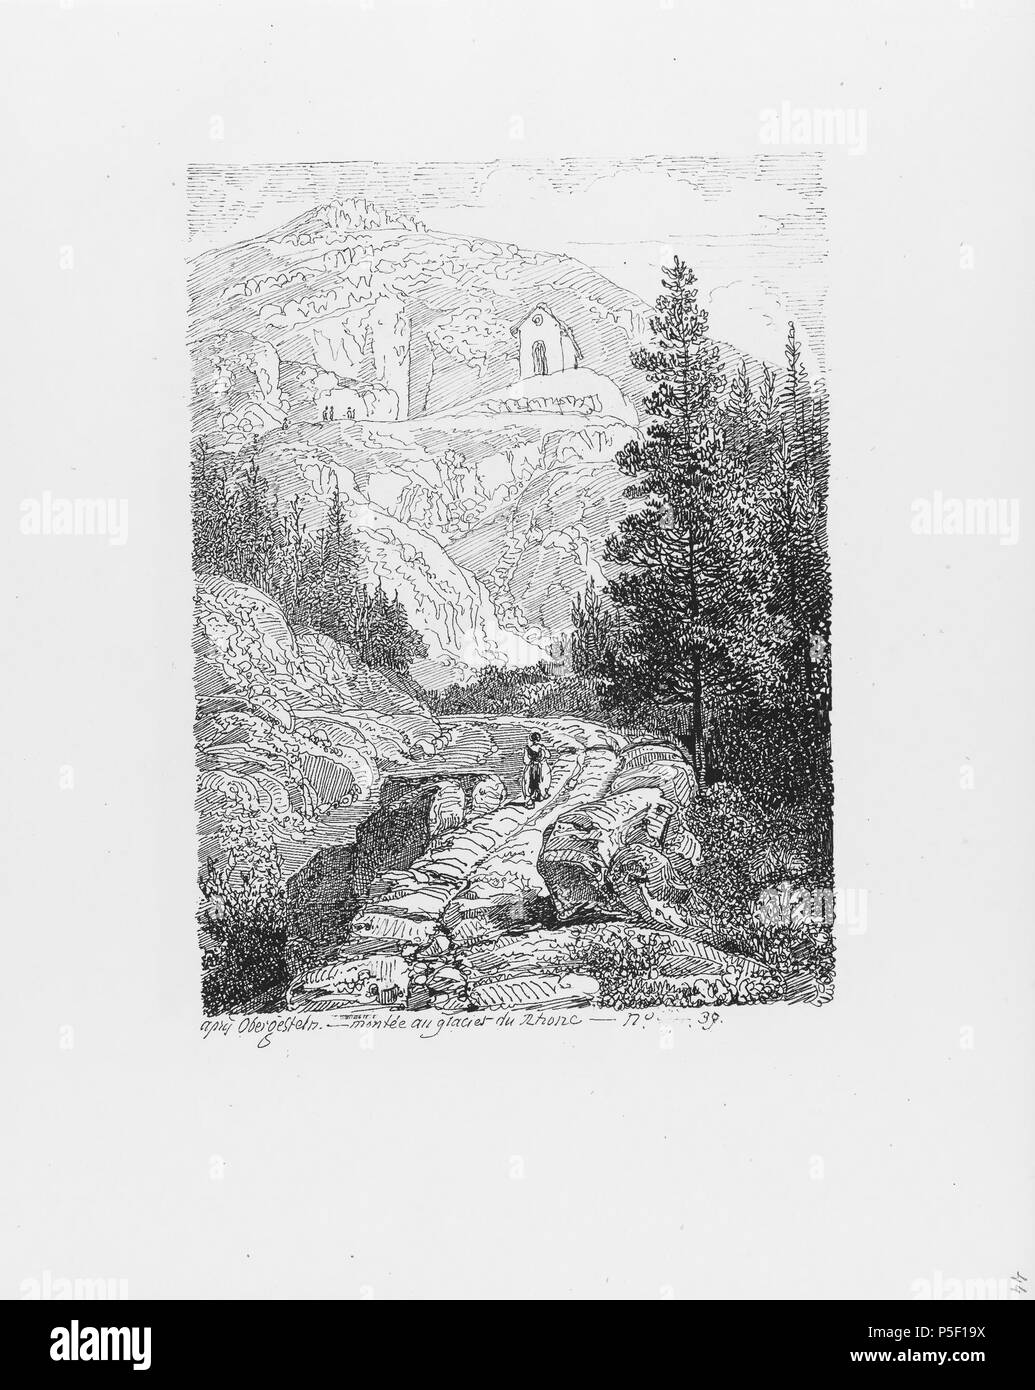 322 CH-NB-Voyage autour du Mont-Blanc dans les vallées d'Hérens de Zermatt et au Grimsel 1843-nbdig-19161-045 Stock Photo